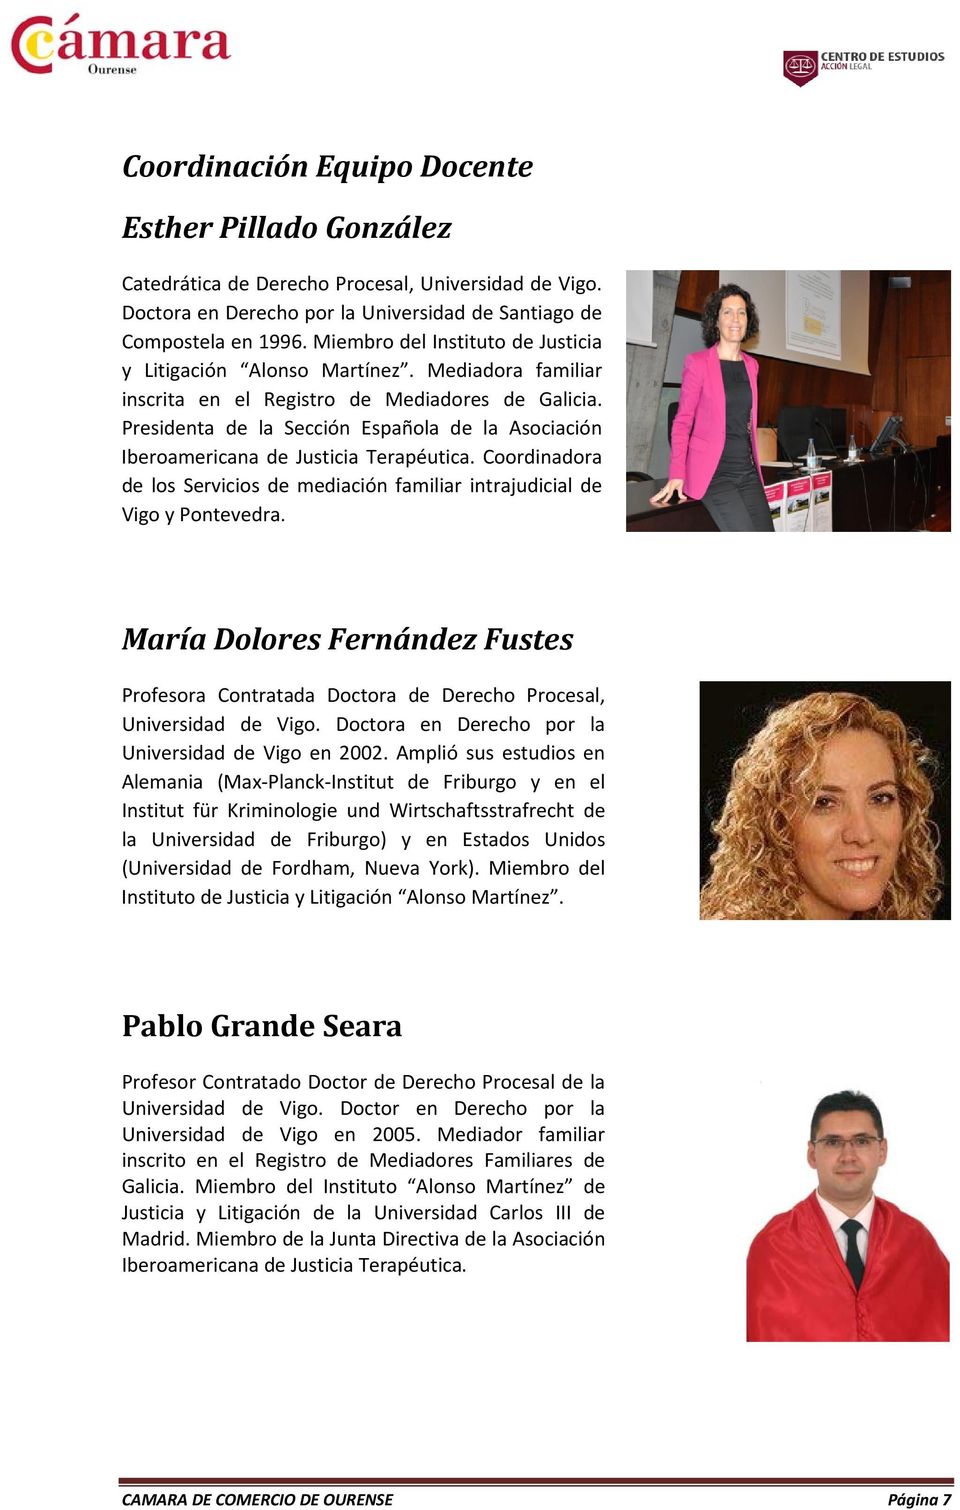 Presidenta de la Sección Española de la Asociación Iberoamericana de Justicia Terapéutica. Coordinadora de los Servicios de mediación familiar intrajudicial de Vigo y Pontevedra.